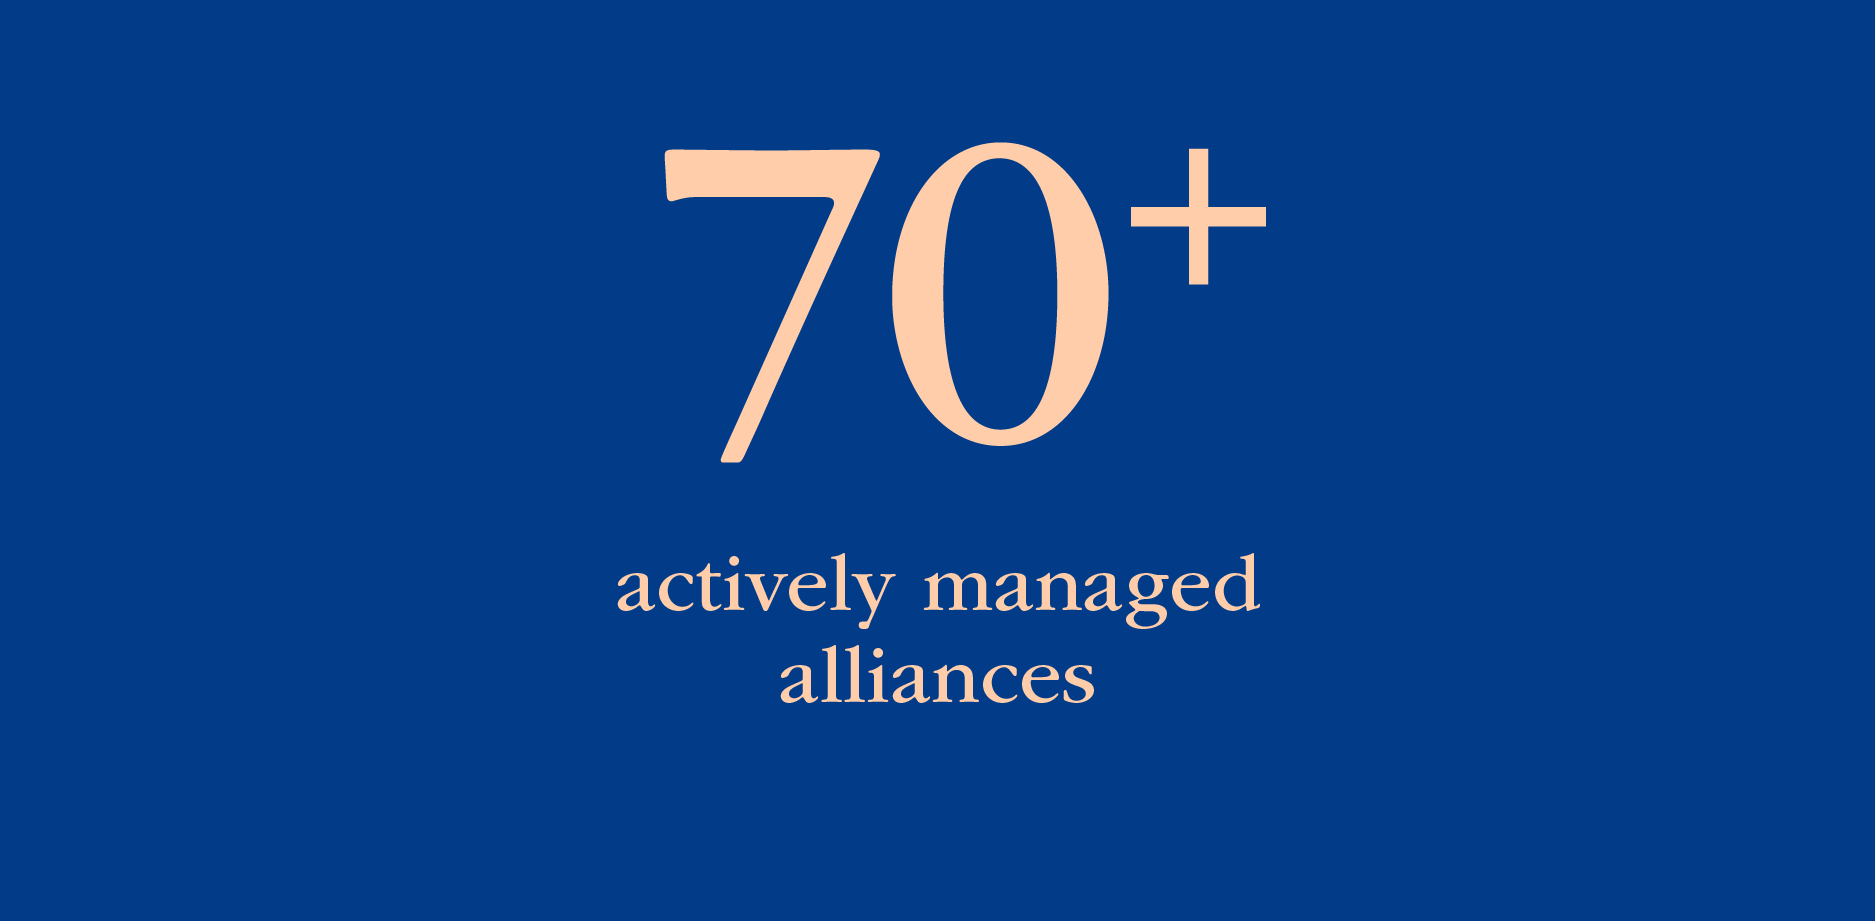 70多个积极管理的联盟 